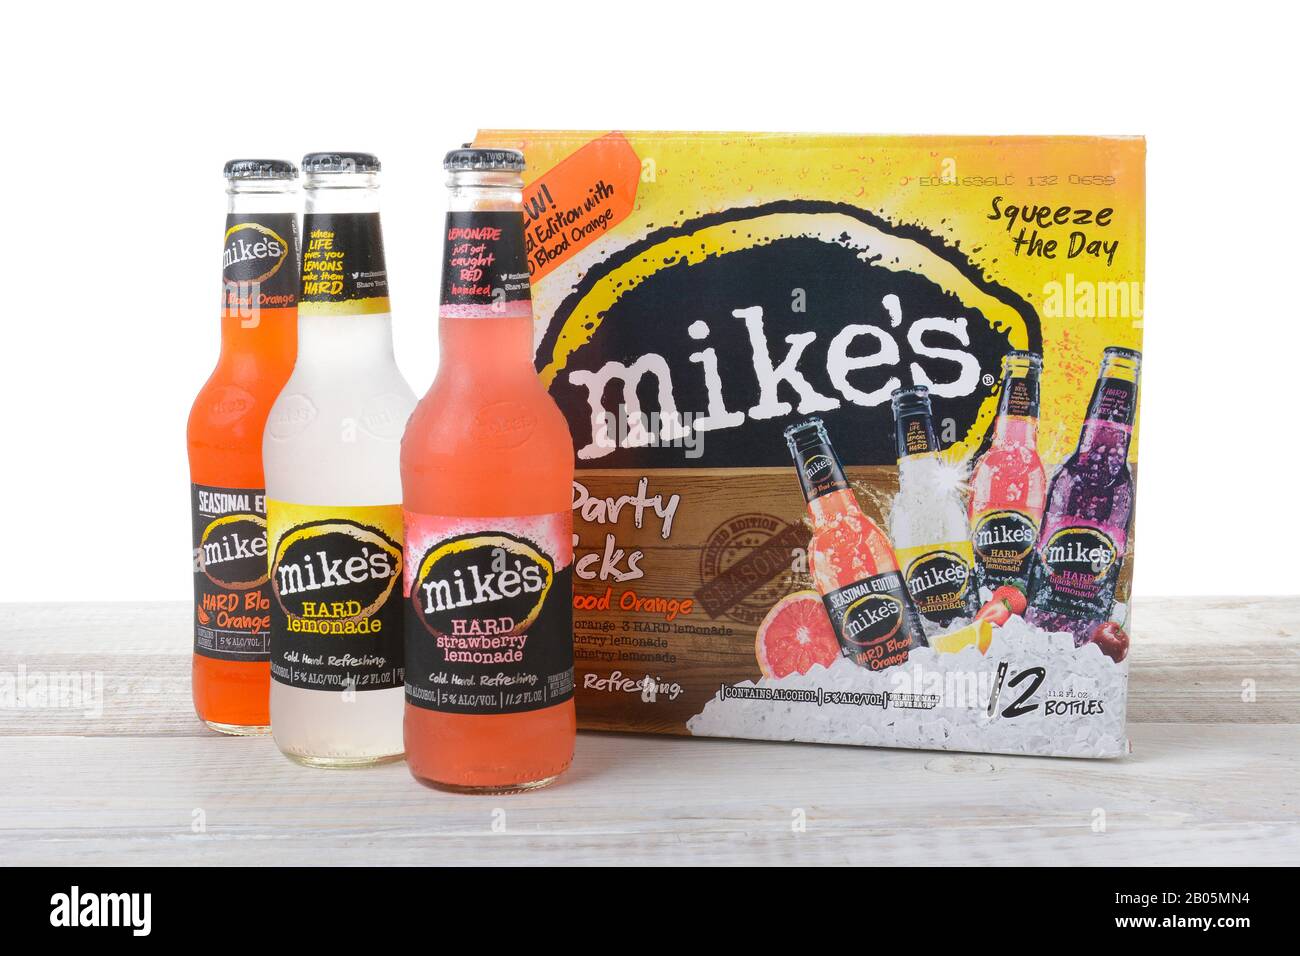 Irvine, California - 15 AGOSTO 2016: Dodici confezioni di Mikes Hard Lemonade. Mikes produce una linea di limonate alcoliche in vari gusti di frutta. Foto Stock